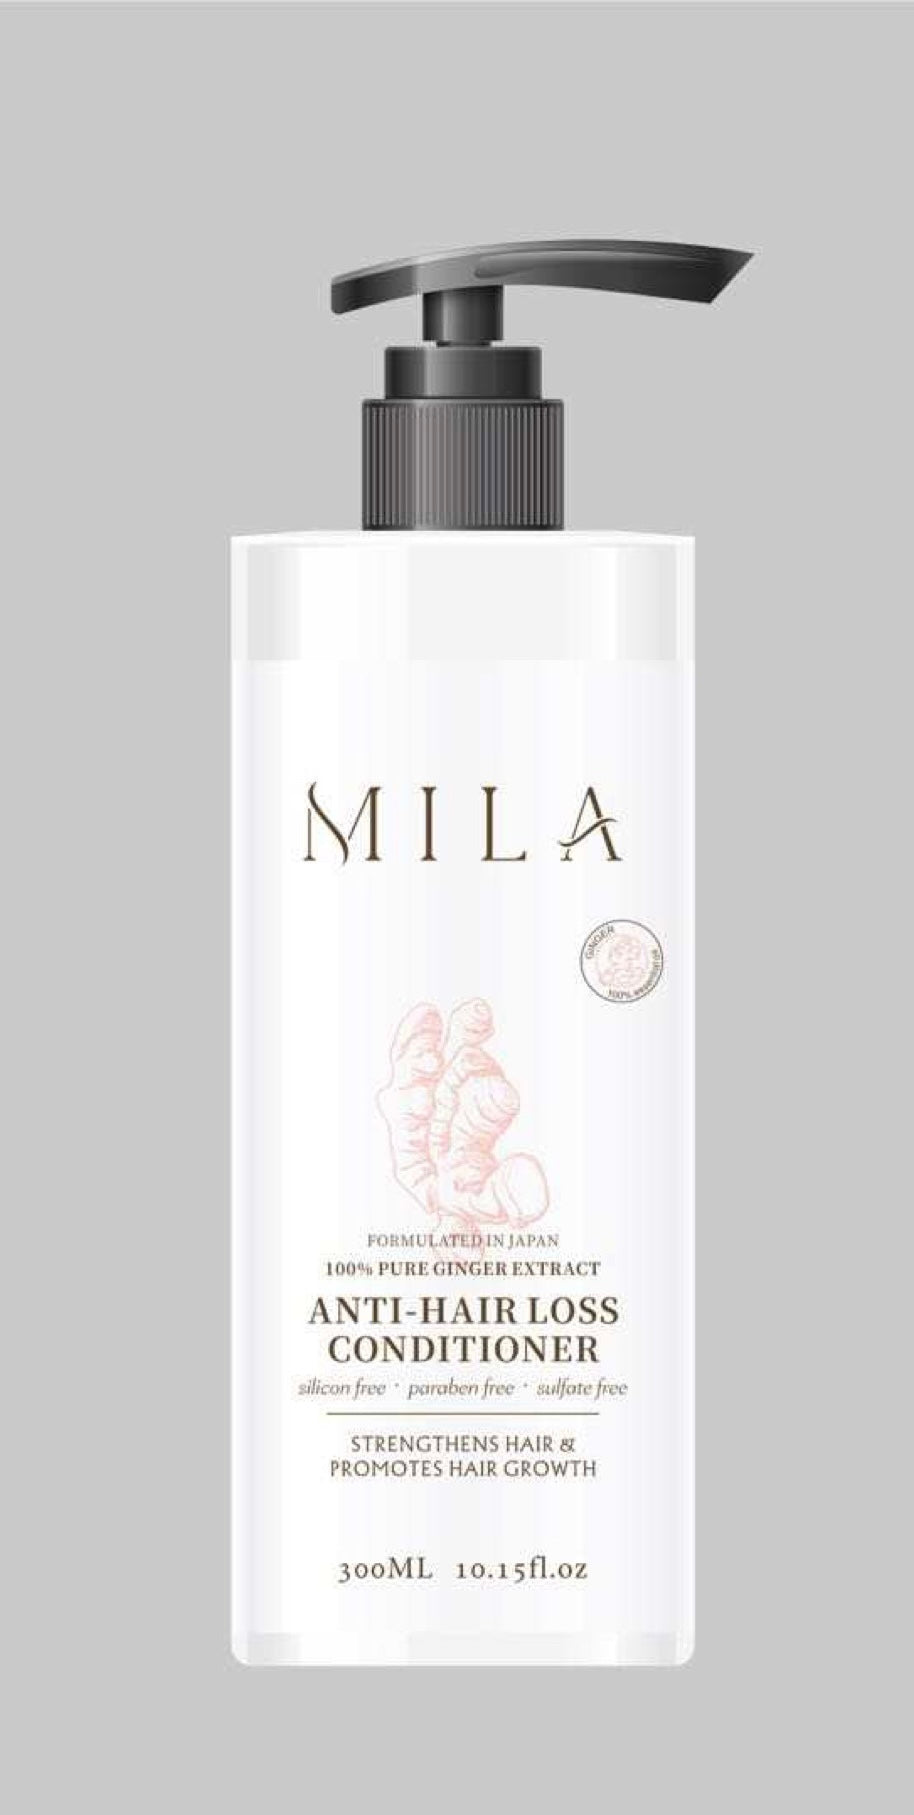 Anti-Hairloss Conditioner